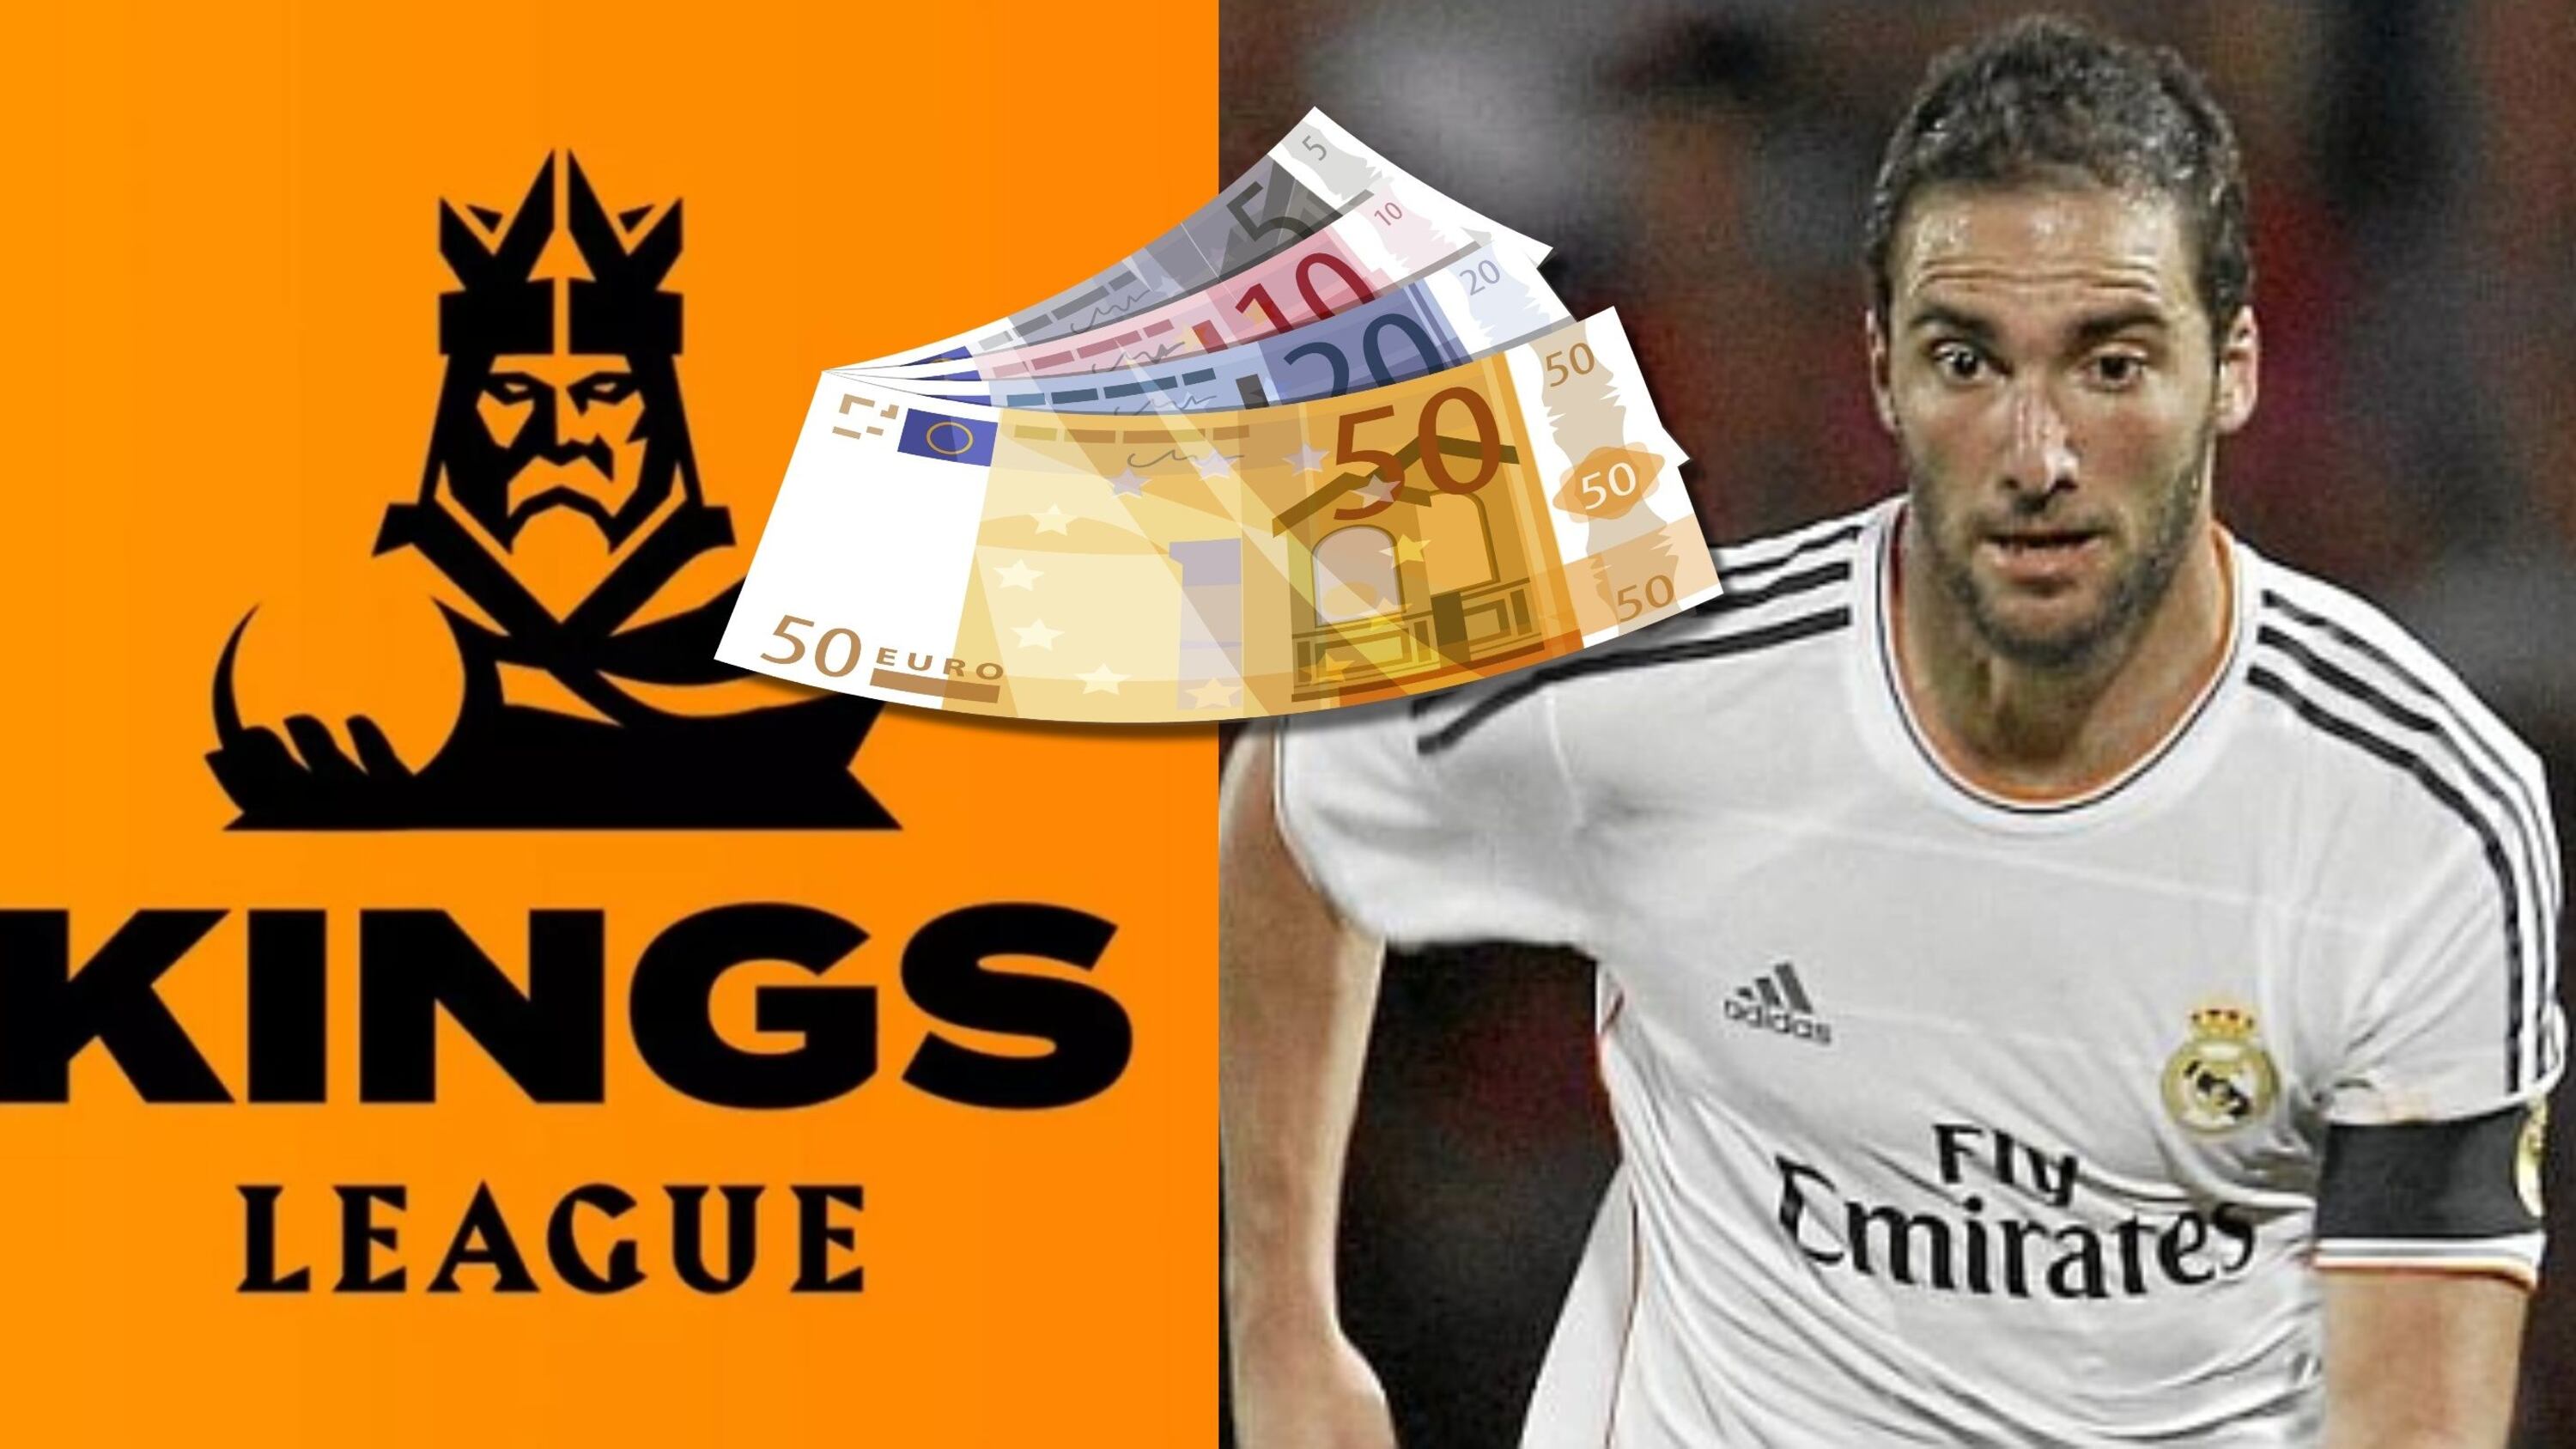 De ganar 6 millones en el Real Madrid, el suedo para Higuaín en la Kings League